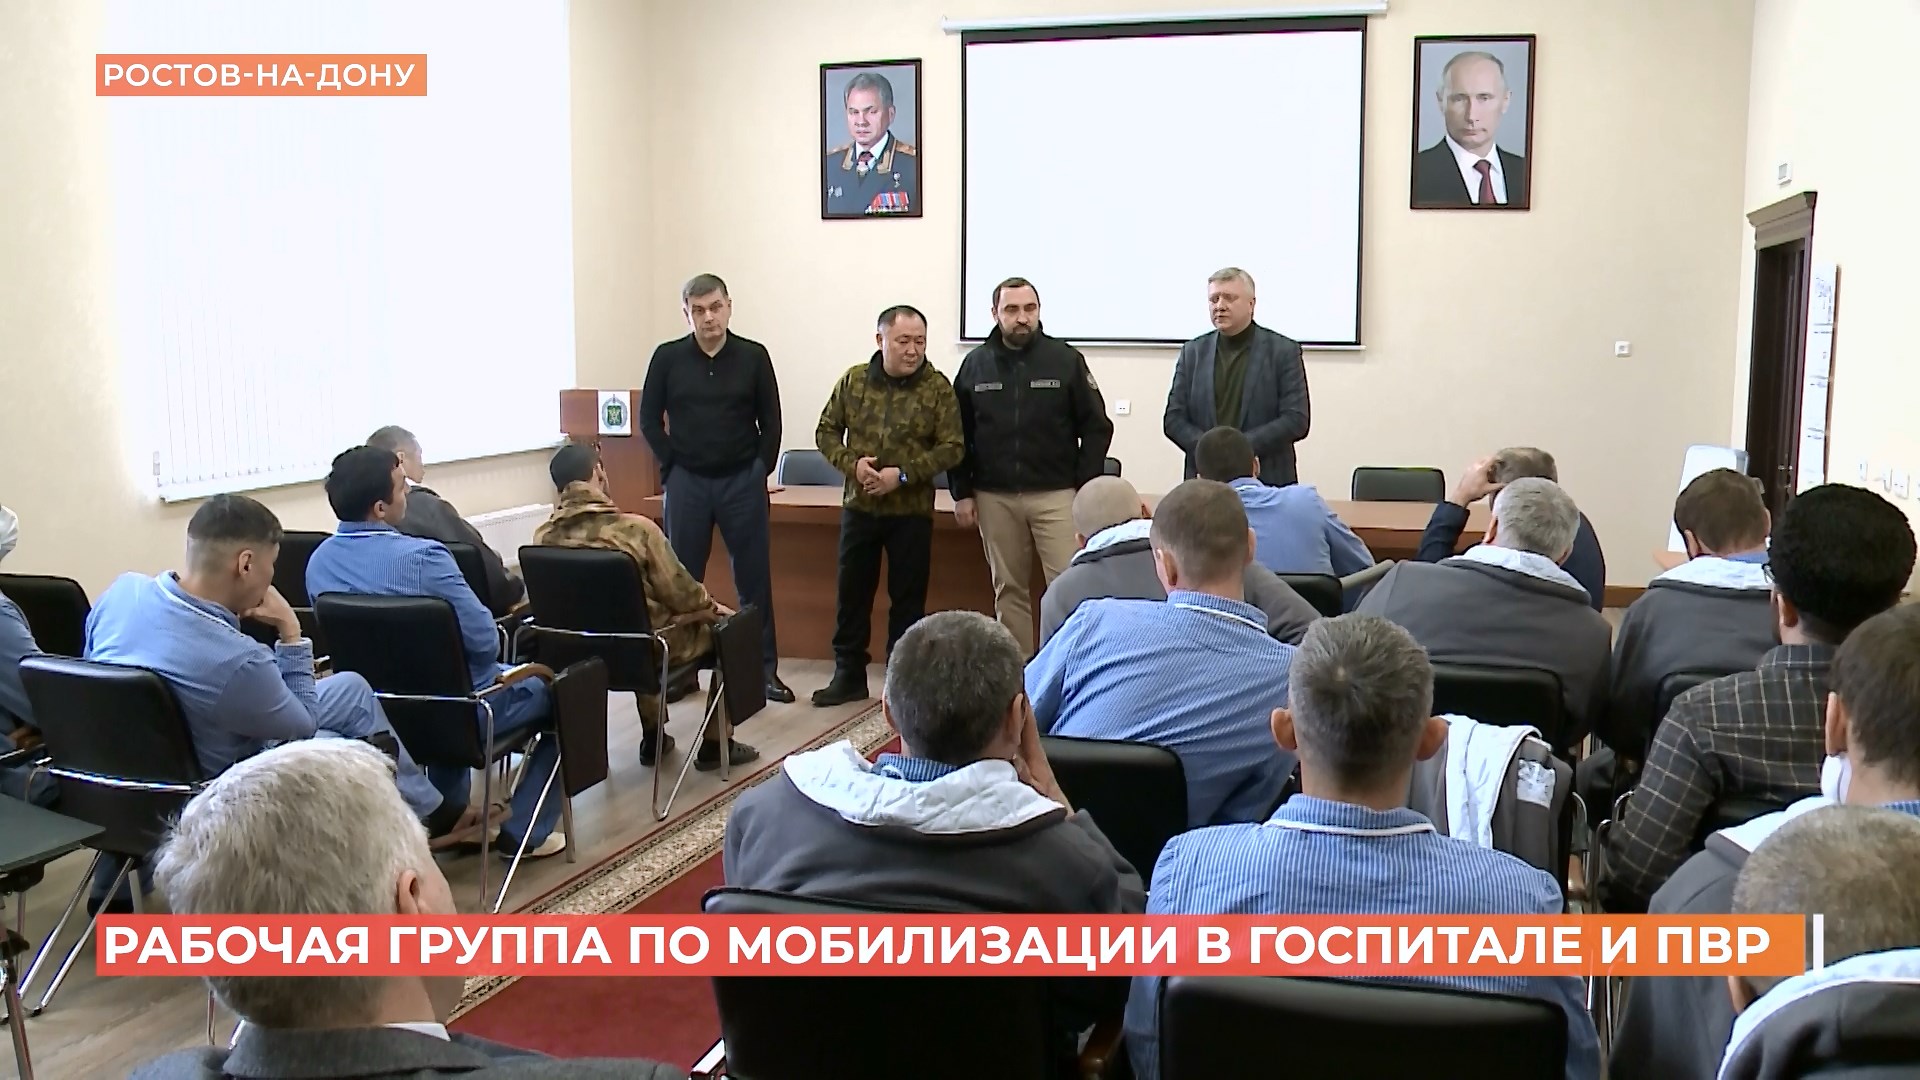 Парламентская рабочая группа по мобилизации приехала в Ростов